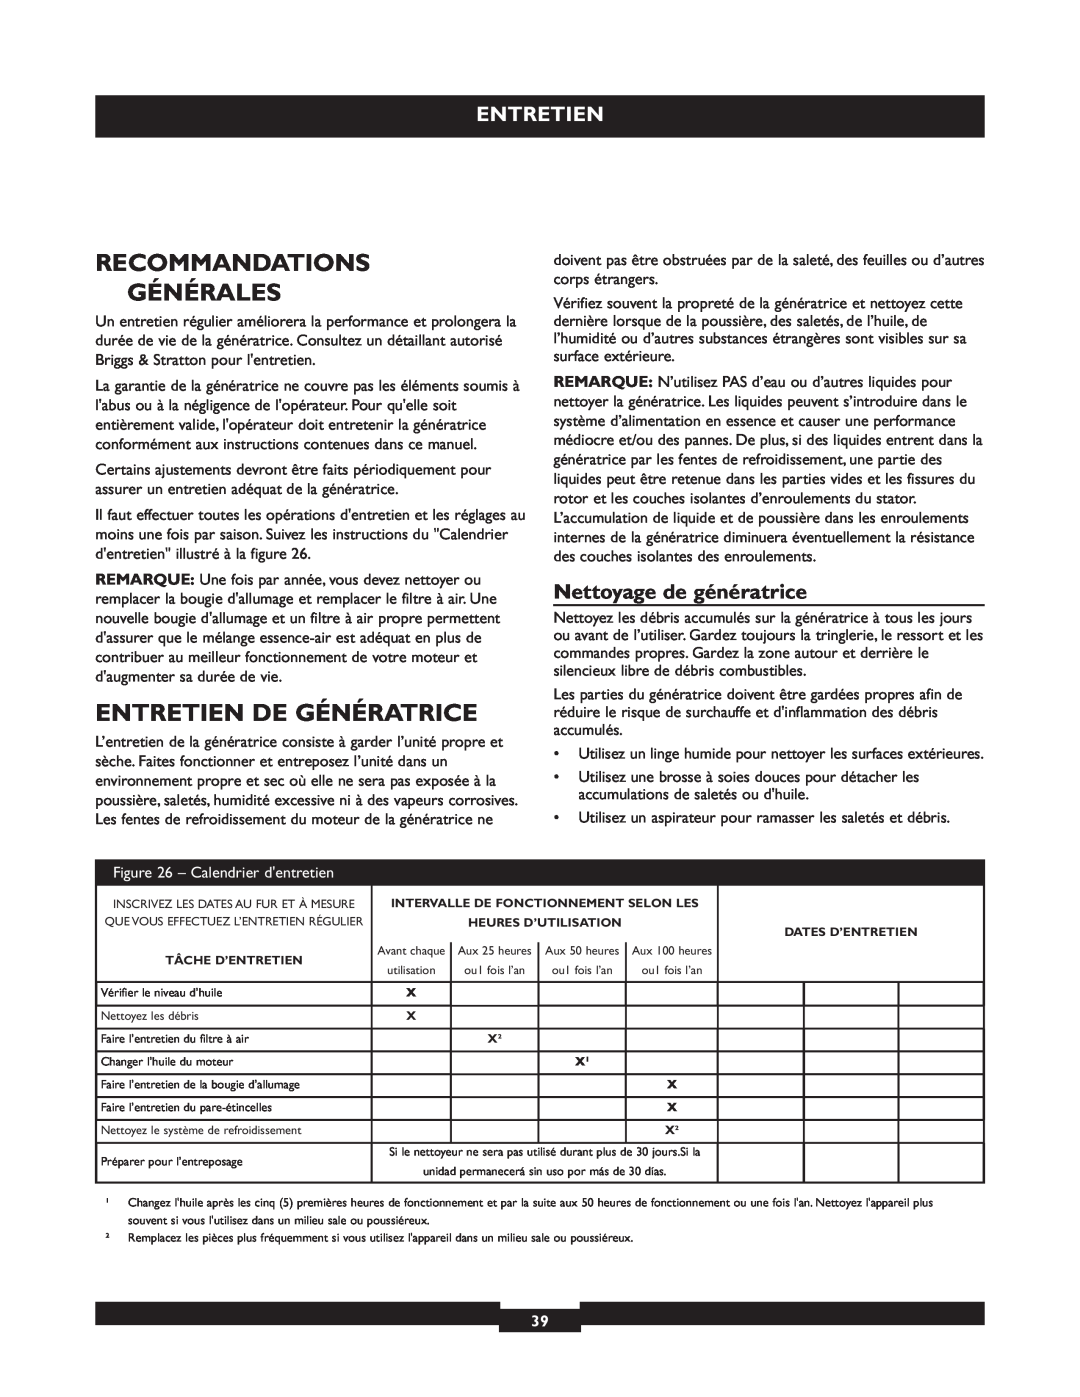 Briggs & Stratton 30236 manuel dutilisation Recommandations Générales, Entretien De Génératrice, Nettoyage de génératrice 